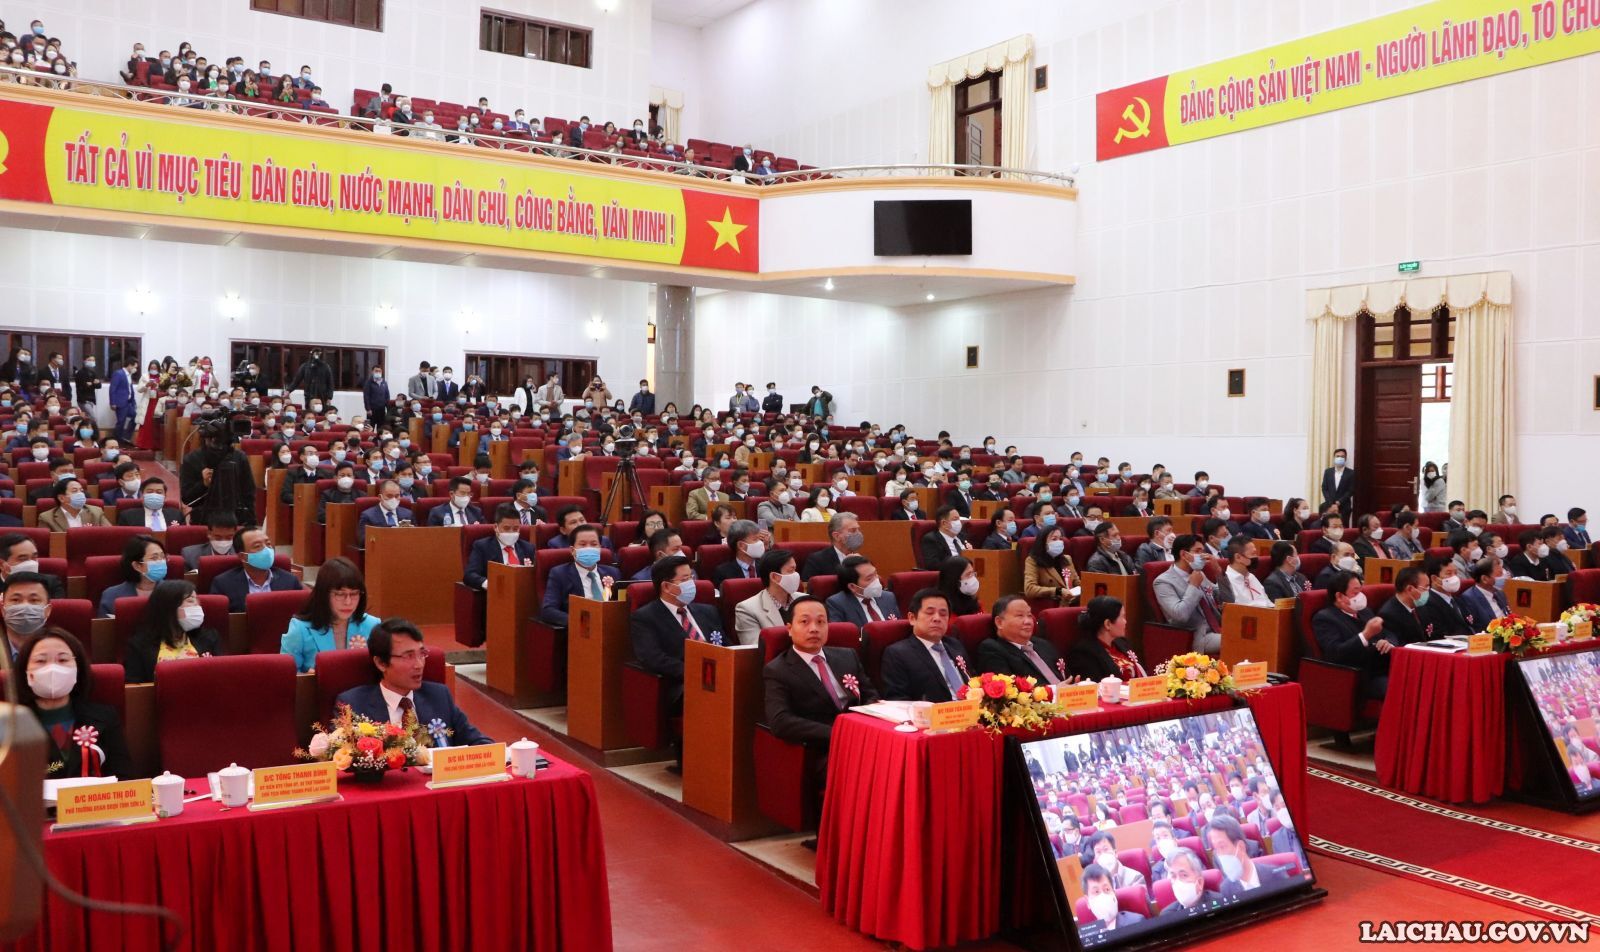 Lai Châu: Tổ chức Hội nghị Xúc tiến Đầu tư lĩnh vực nông nghiệp đầu tiên của cả nước nhằm phục hồi kinh tế - Ảnh minh hoạ 11